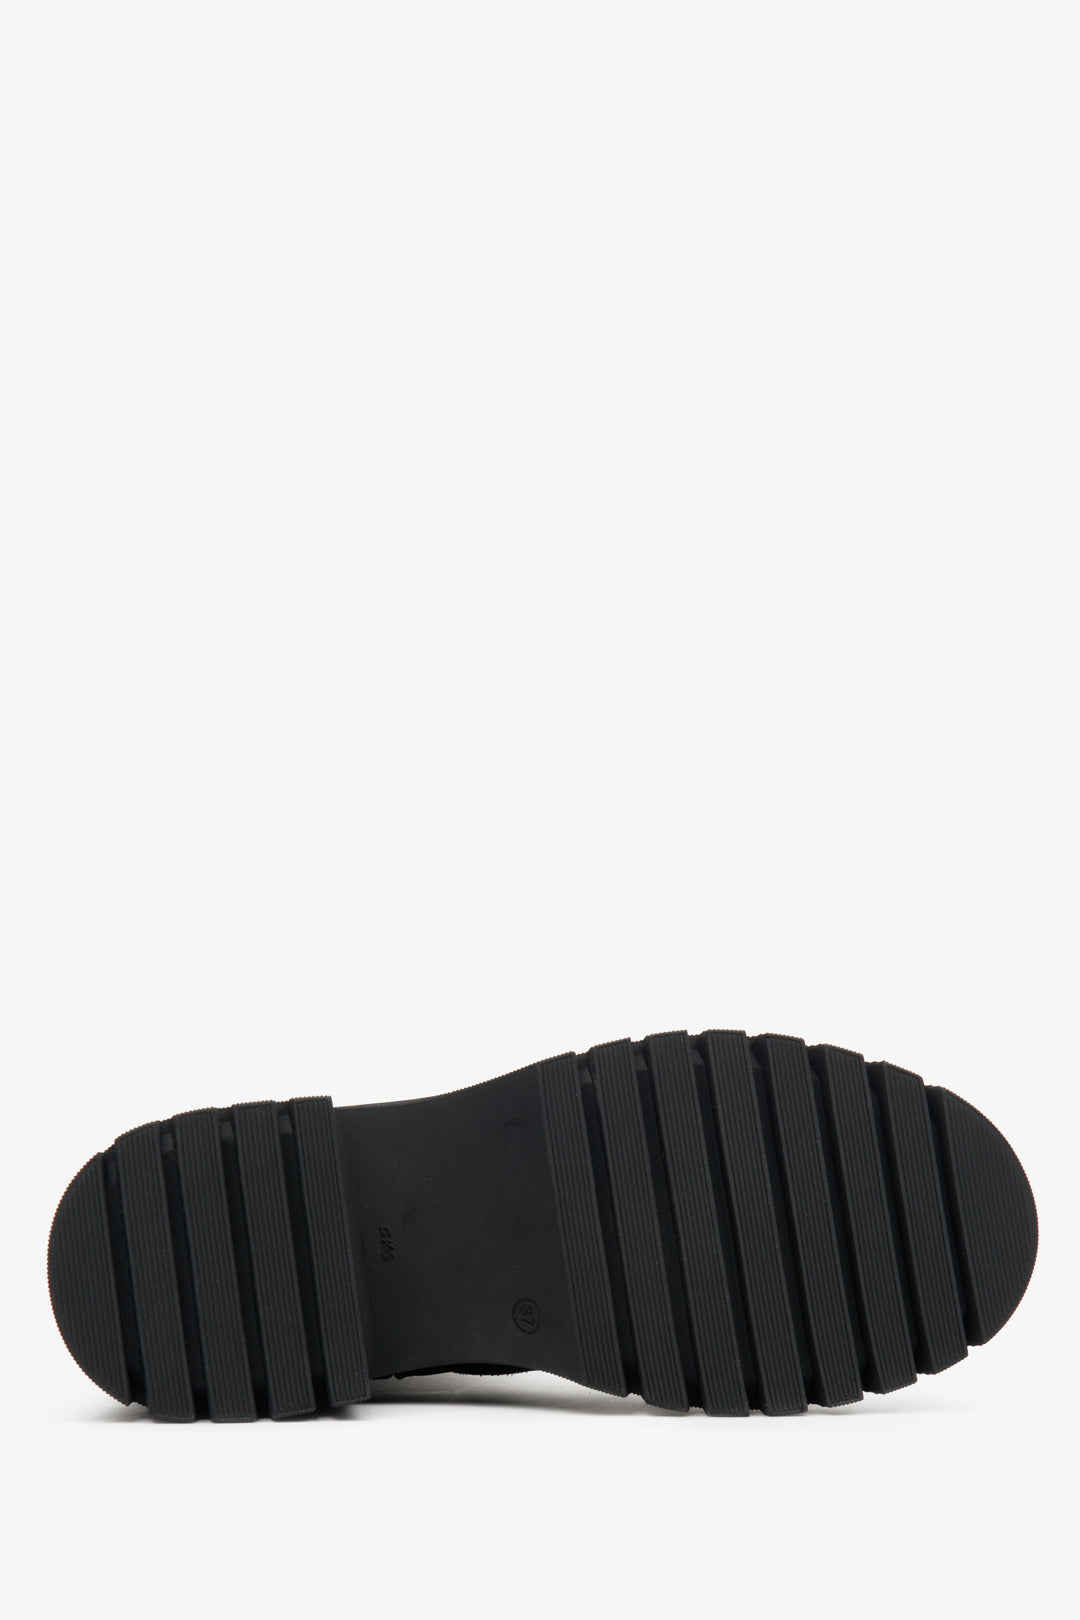 Botki damskie zimowe Estro w kolorze czarnym - zbliżenie na podeszwę buta.